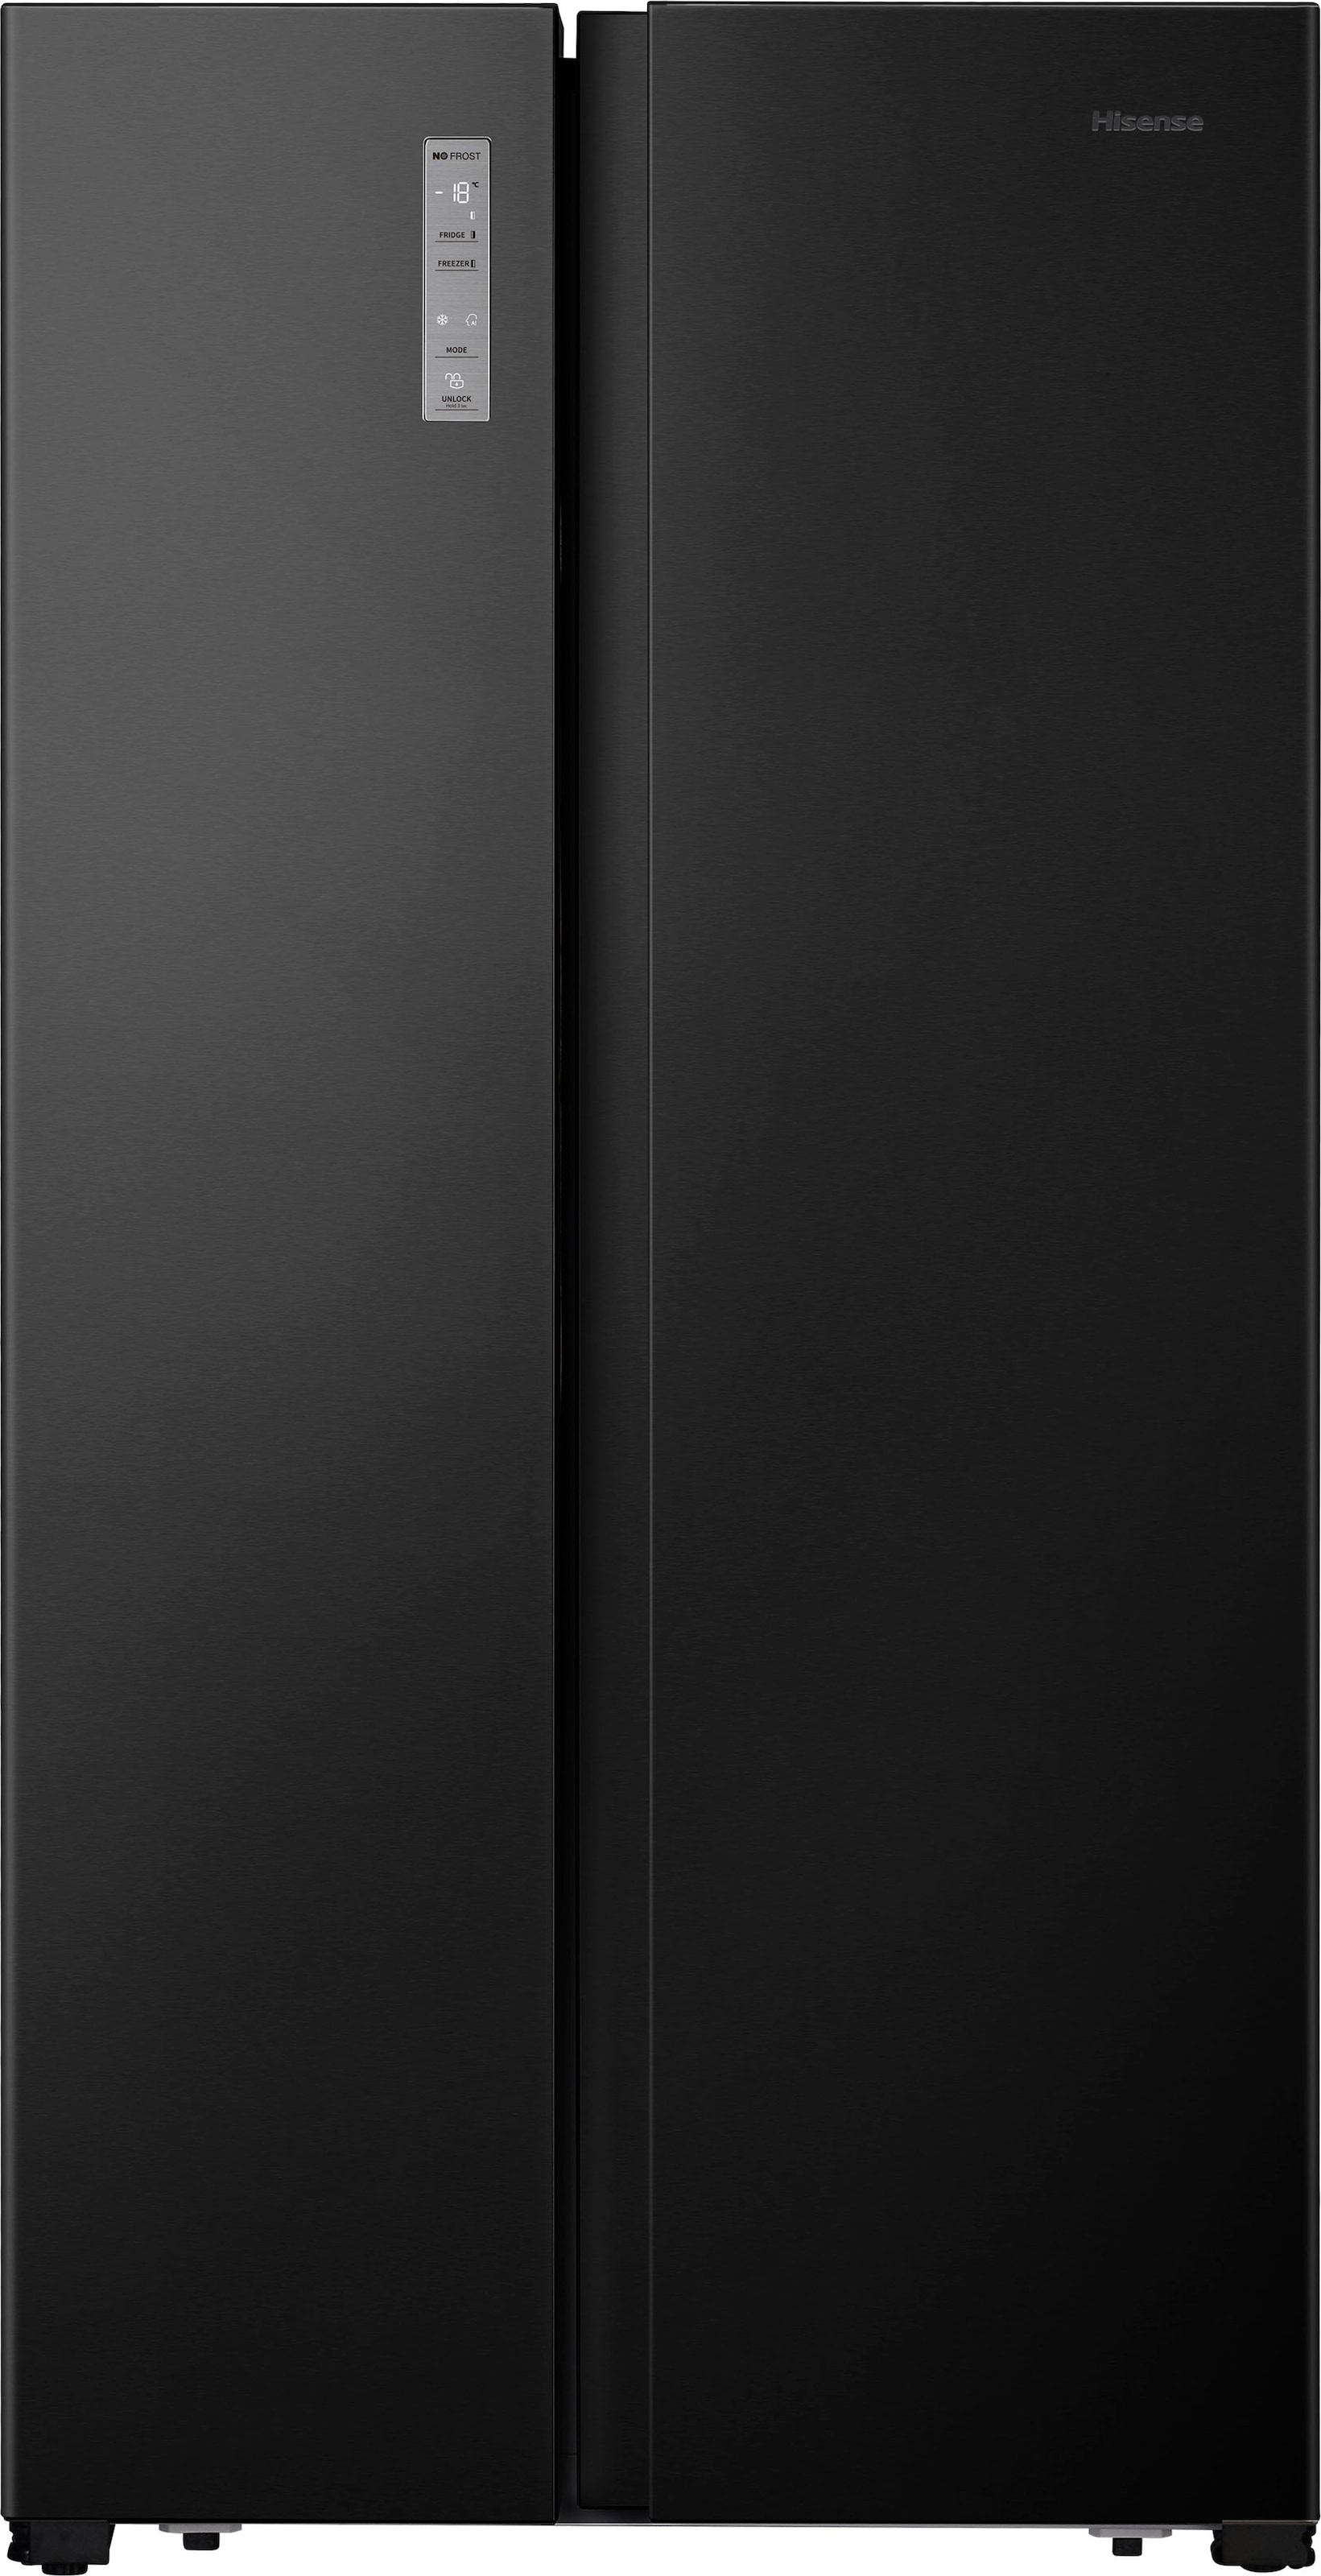 Hisense Side-by-Side »MS91518«, MS91518FC, 178,6 cm hoch, 91 cm breit, 4 Jahre Herstellergarantie